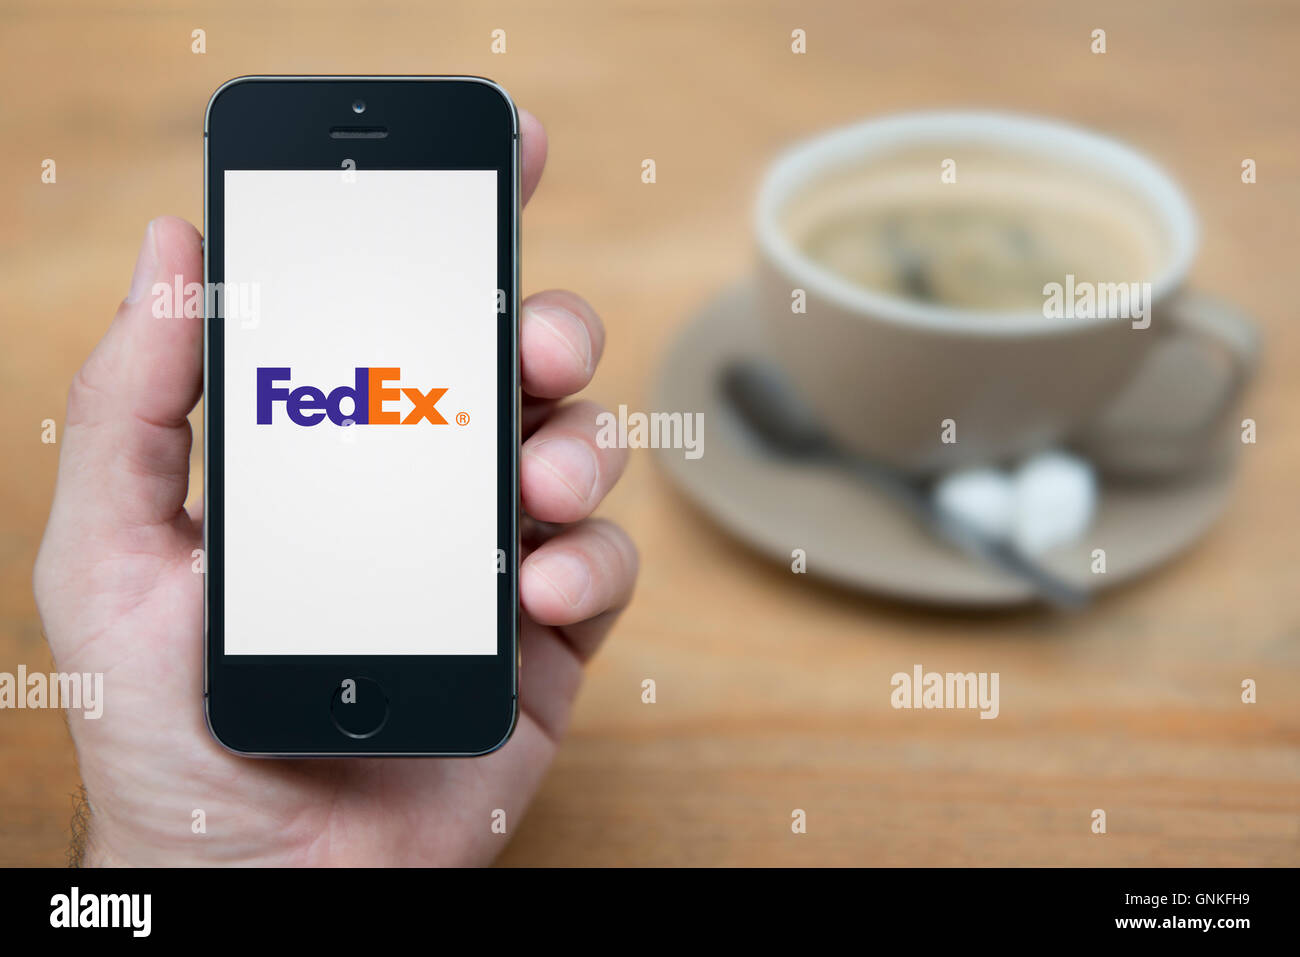 Un uomo guarda al suo iPhone che visualizza il logo FedEx, mentre sat con una tazza di caffè (solo uso editoriale). Foto Stock